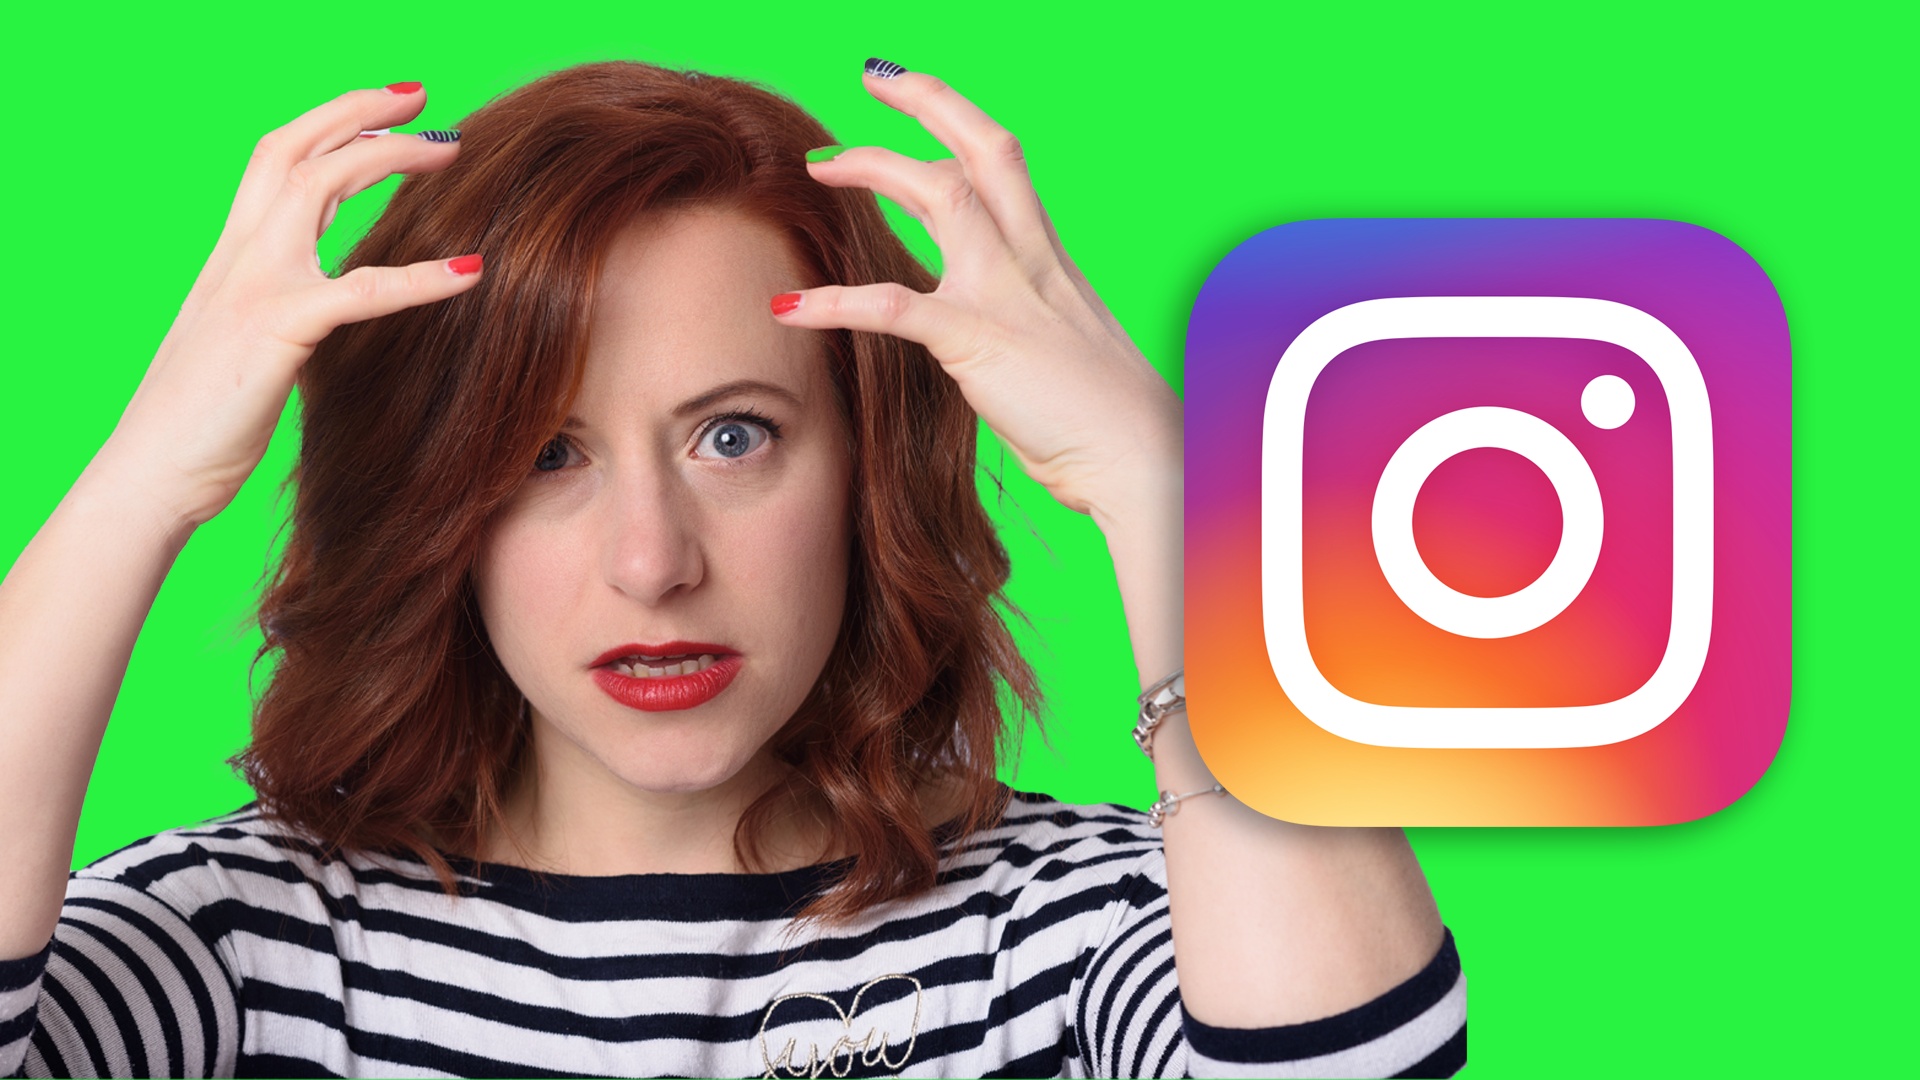 #Fotografin verklagt Agentur, die ihr für 50.000 US-Dollar 100.000 Instagram-Follower versprach – stattdessen erhielt sie Bot-Accounts